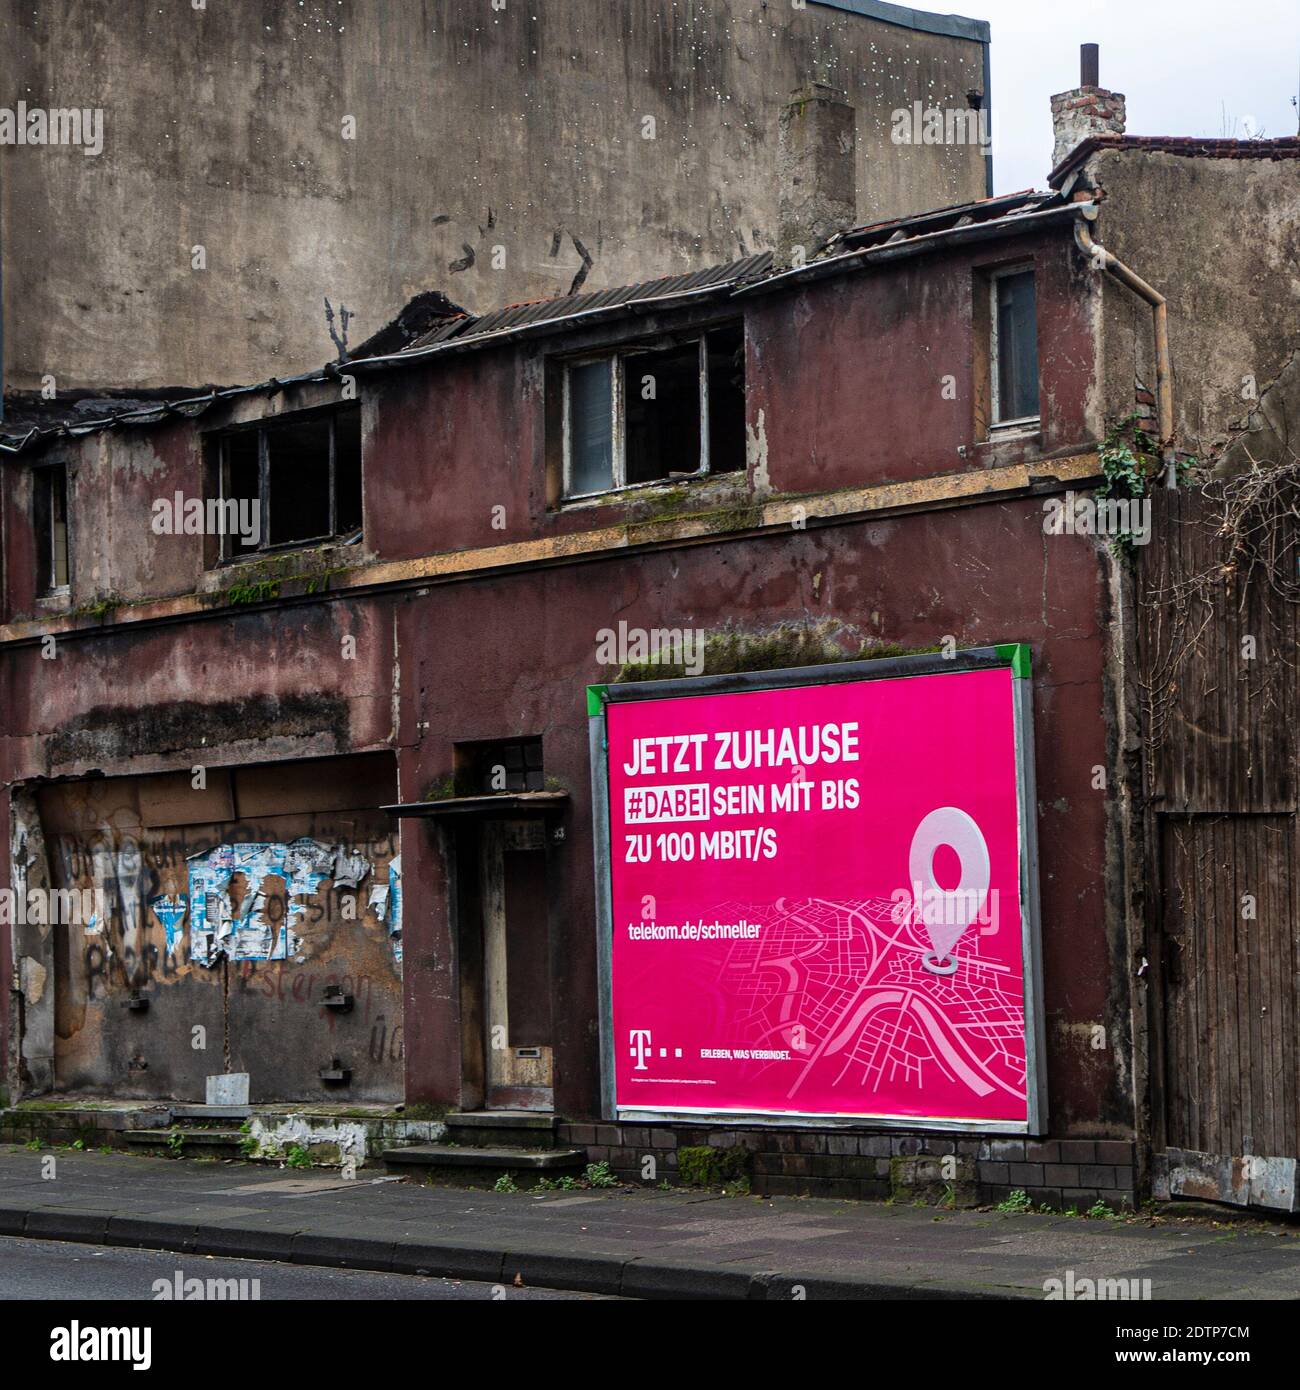 Reklame an Trümmerhäusern in Duisburg. Die Telekom wirbt mit 'jetzt zuhause' , wo kein zu hause mehr ist. Stock Photo